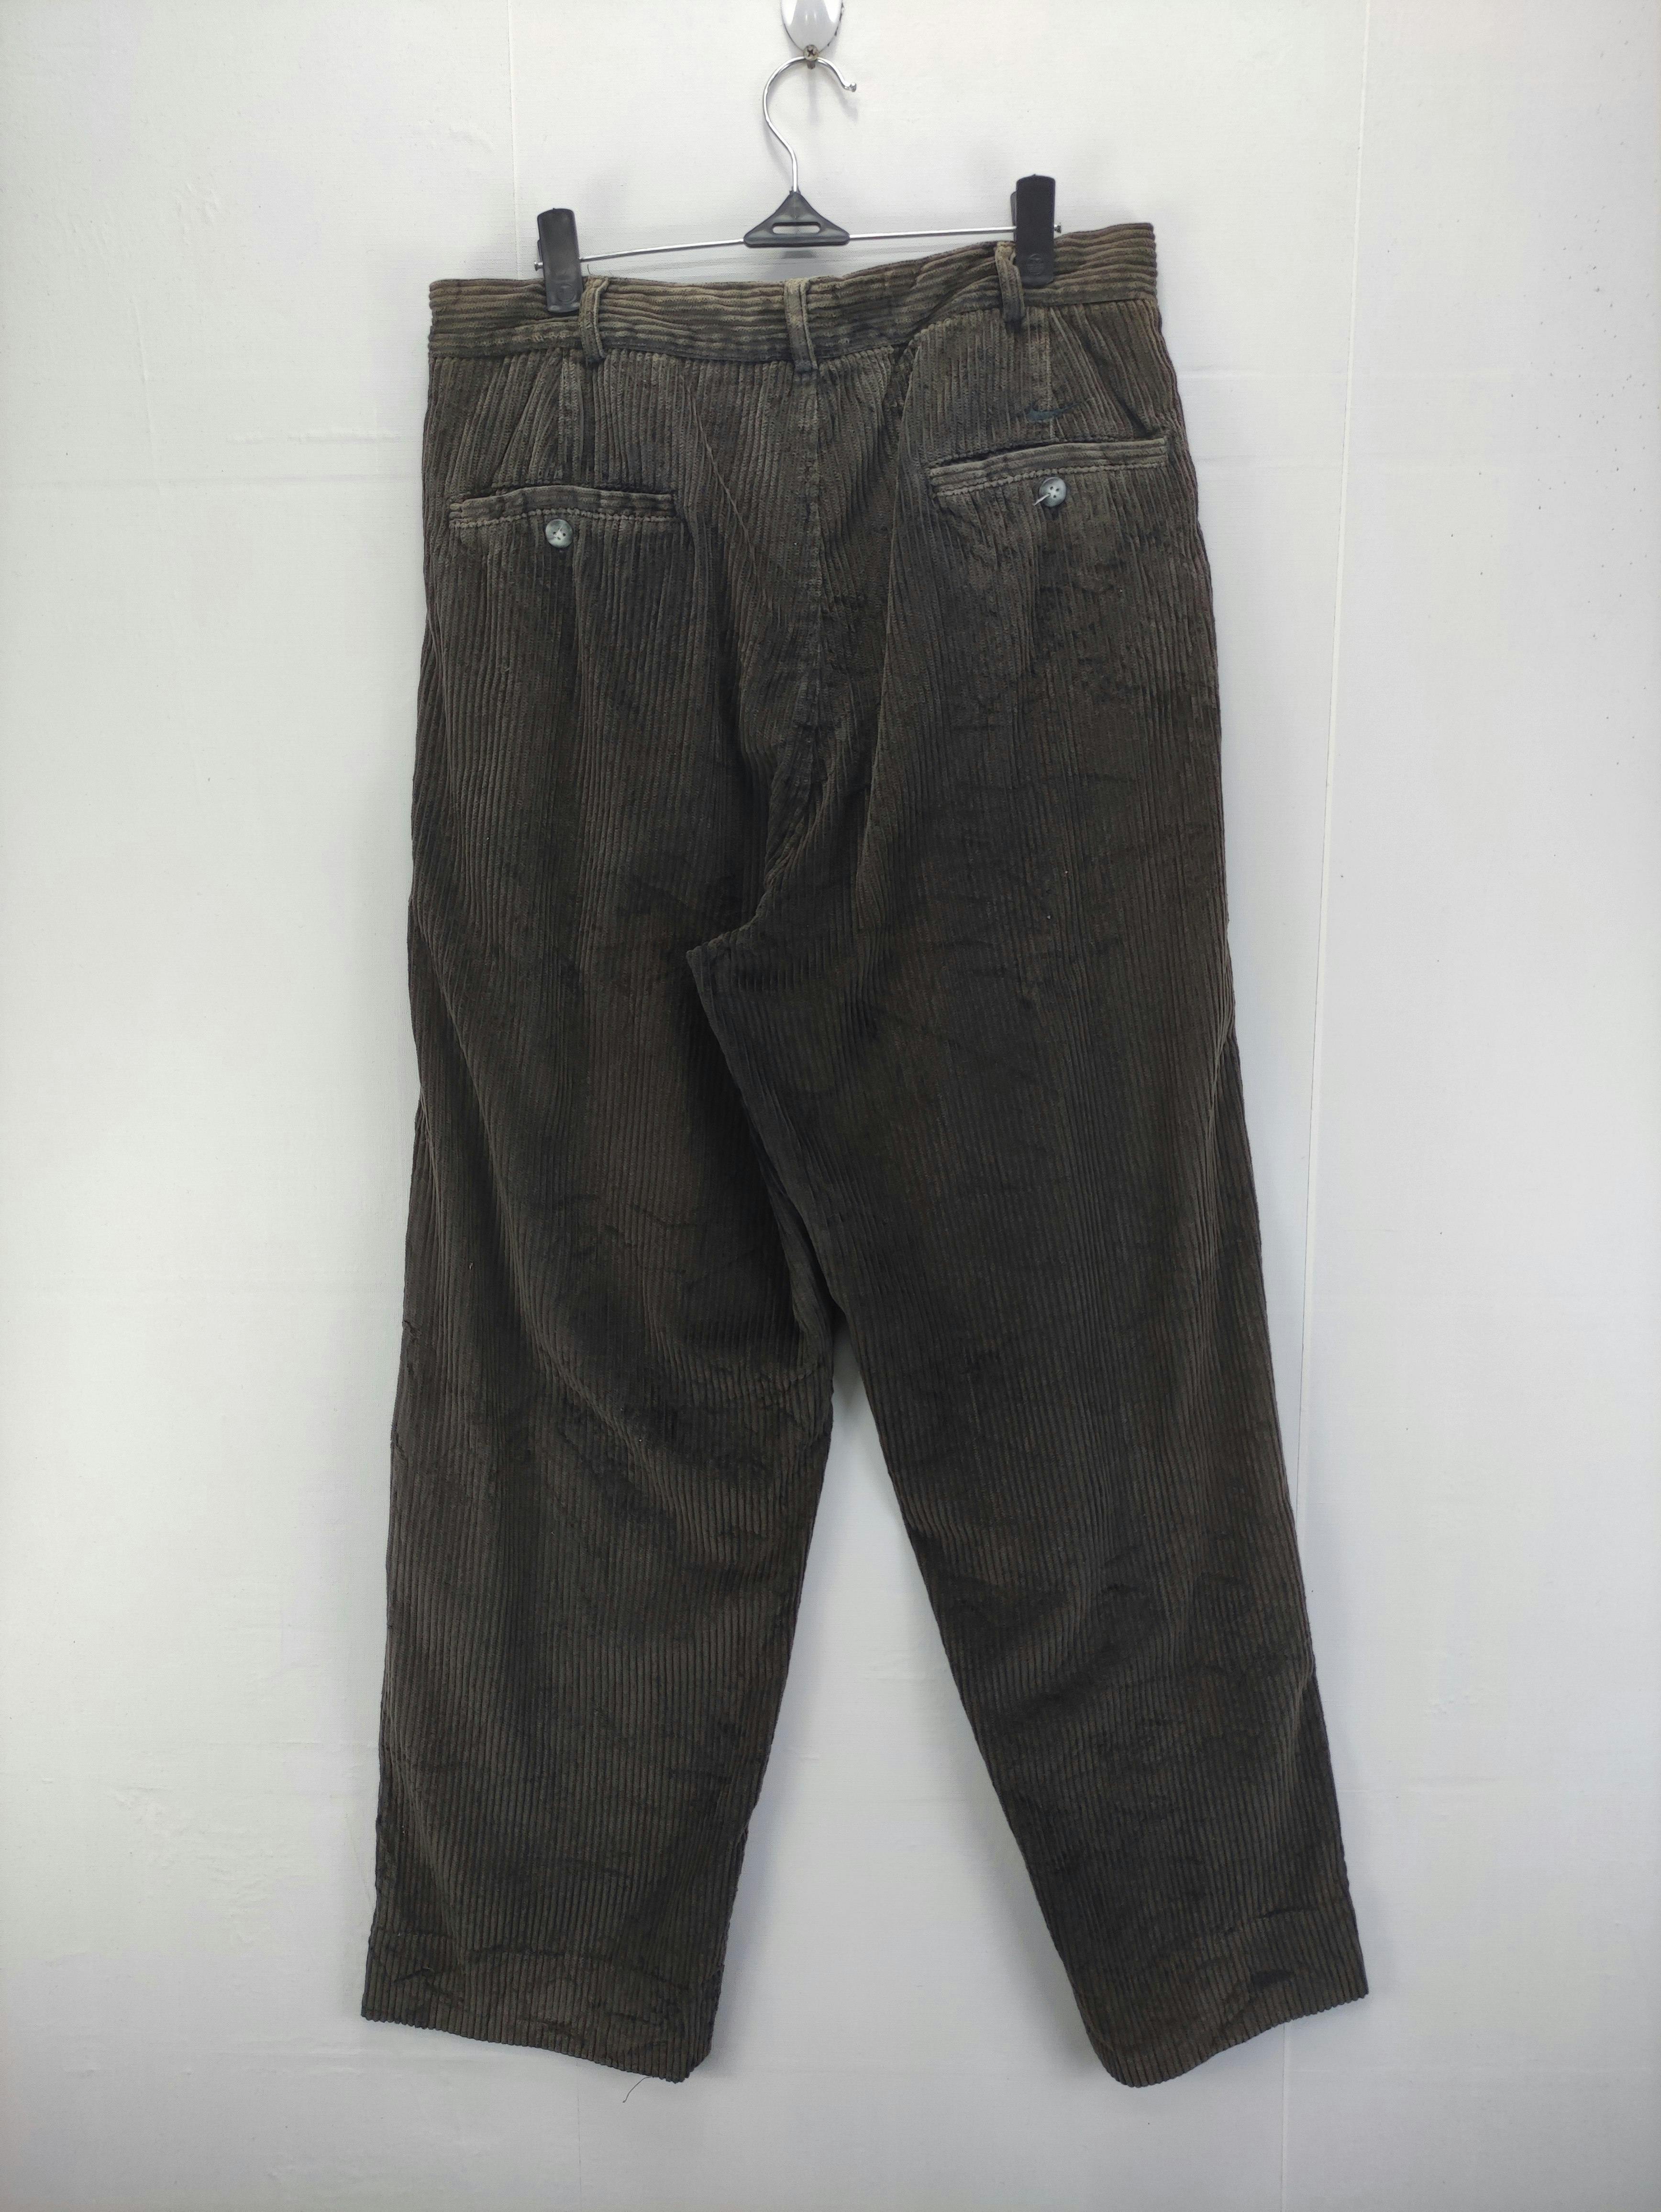 Vintage Nike Cuduroy Pants - 10